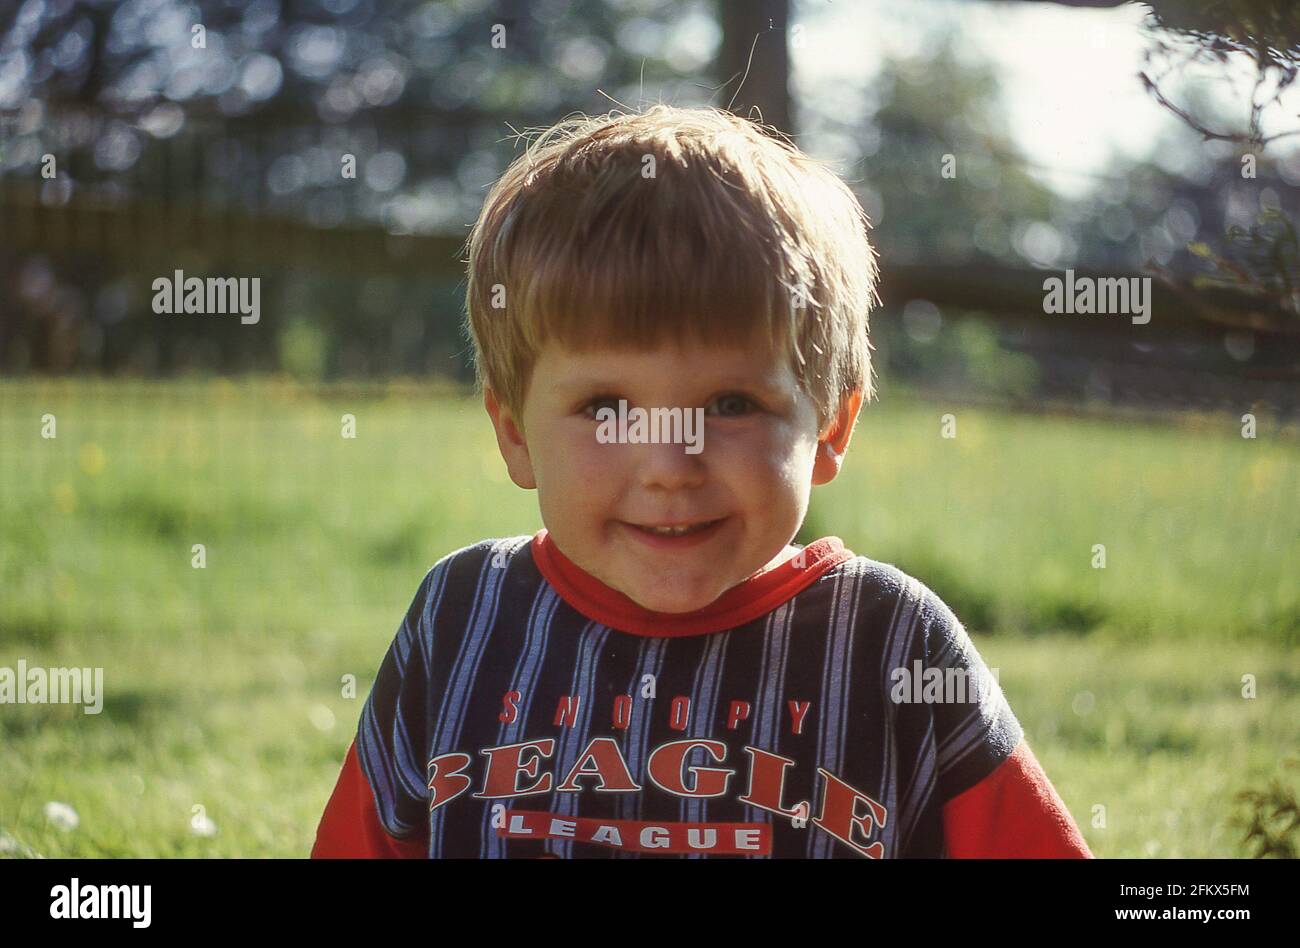 Jeune garçon assis dans le champ, Berkshire, Angleterre, Royaume-Uni Banque D'Images